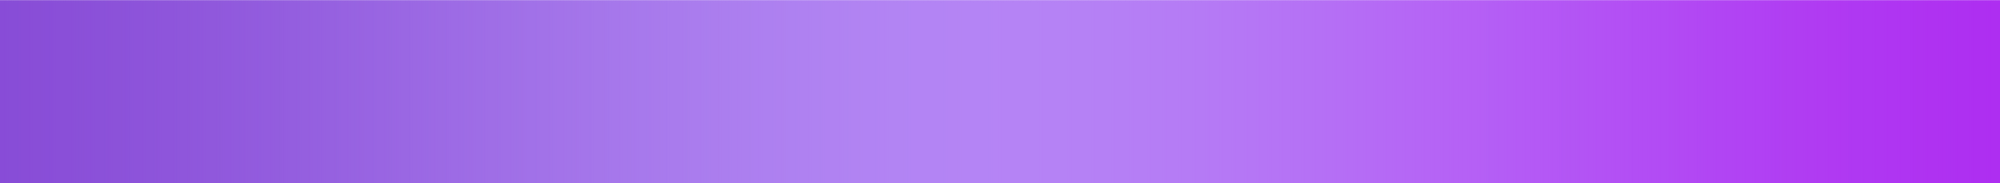 purple banner bar